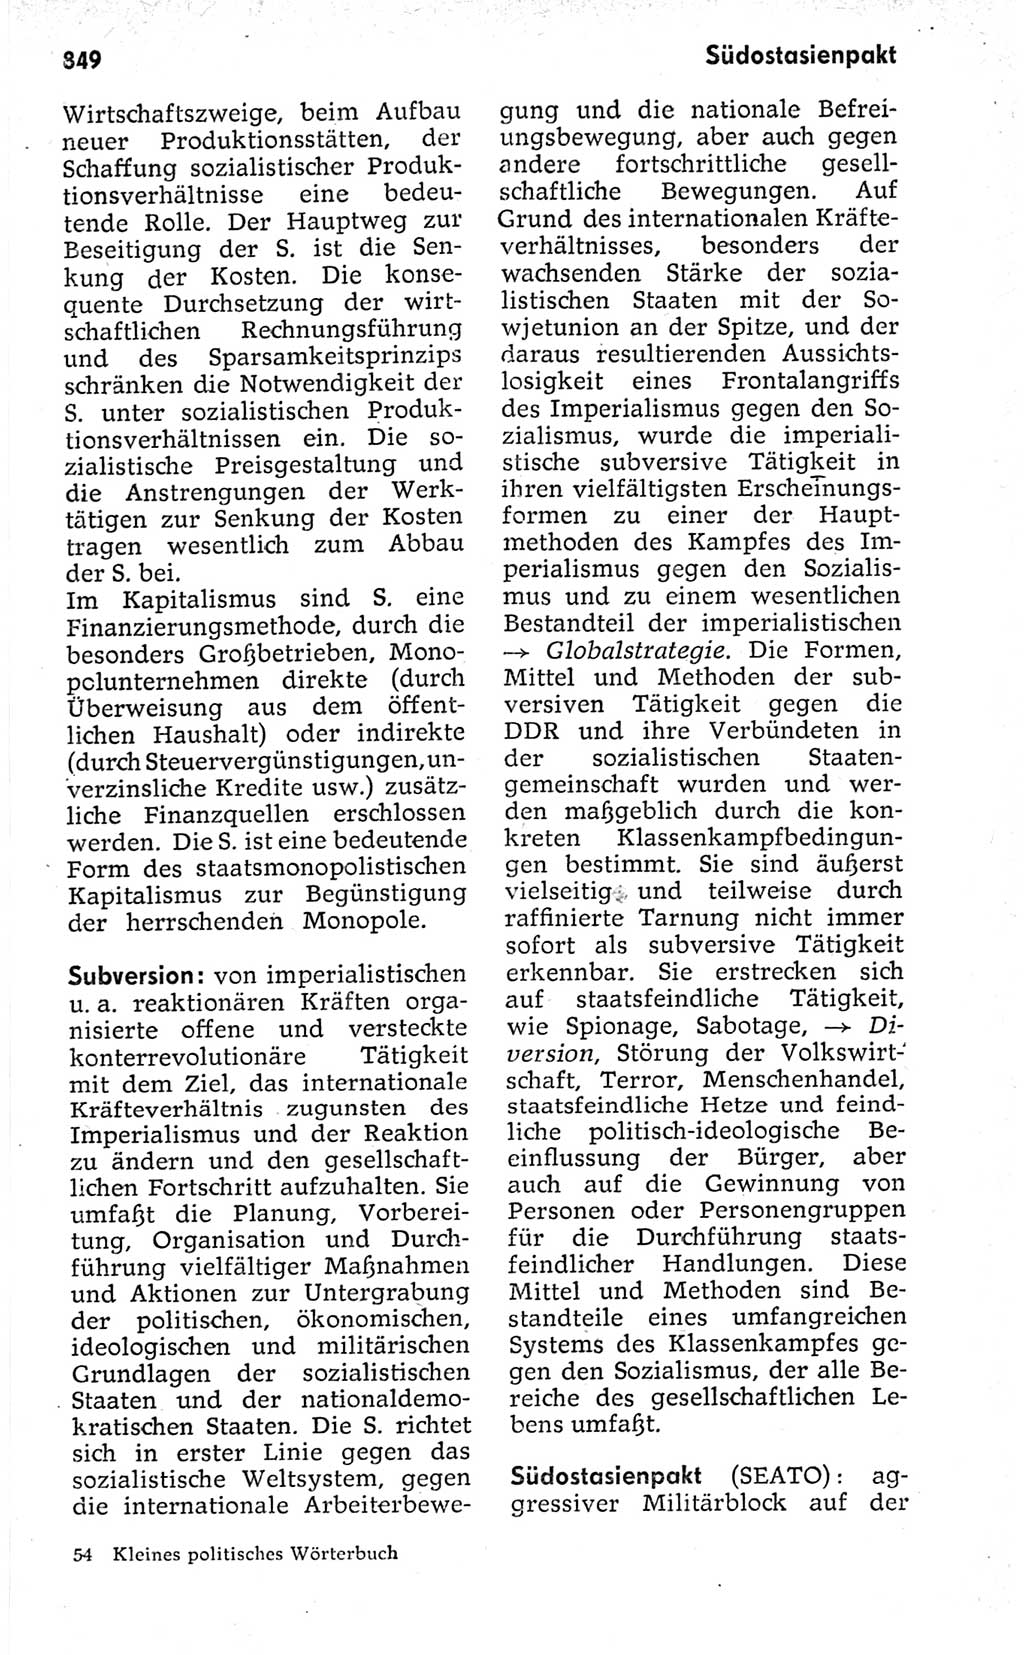 Kleines politisches Wörterbuch [Deutsche Demokratische Republik (DDR)] 1973, Seite 849 (Kl. pol. Wb. DDR 1973, S. 849)